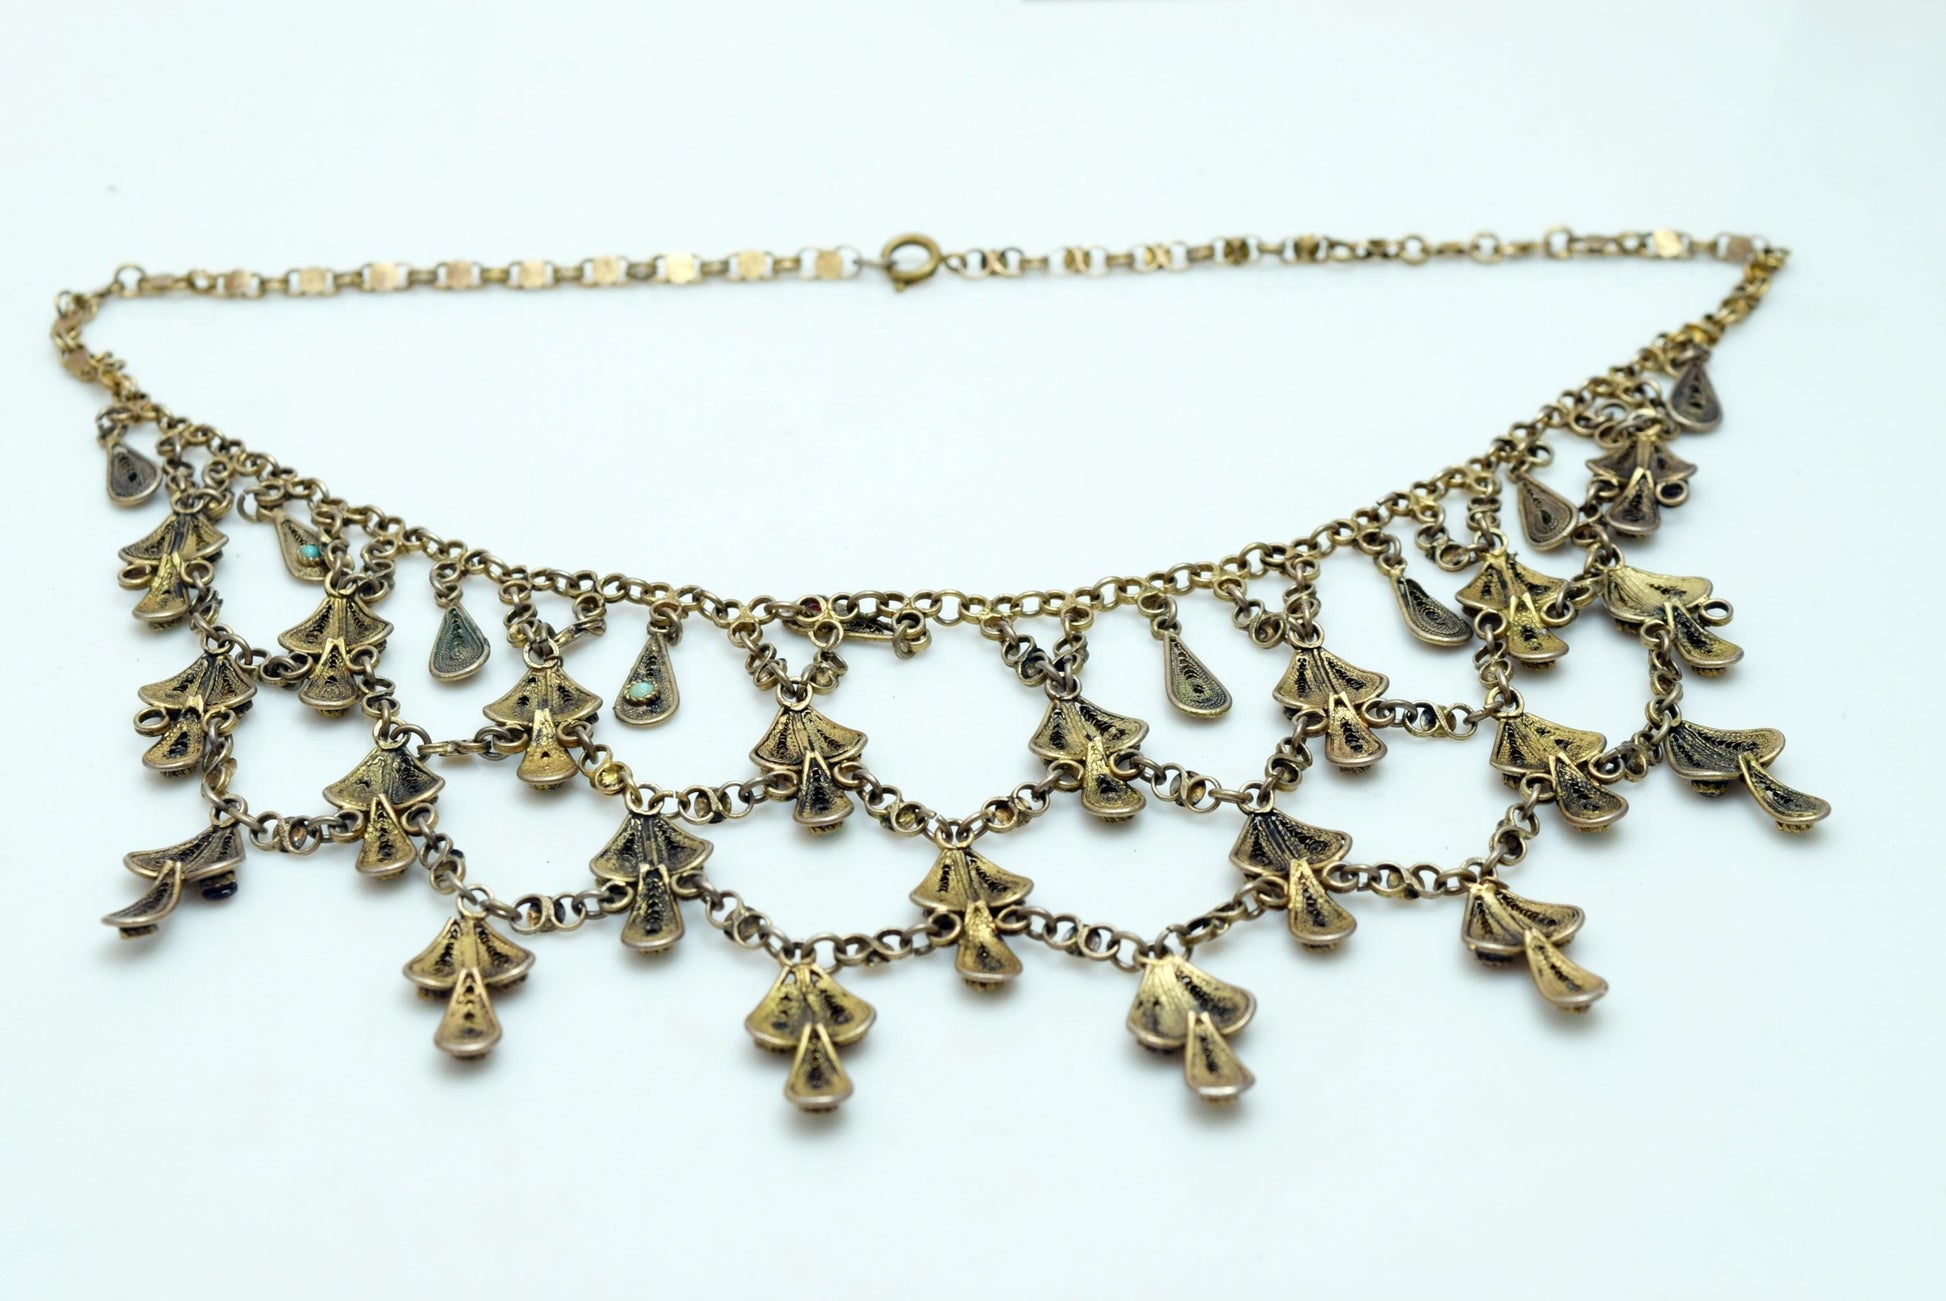 Yemeni style necklace